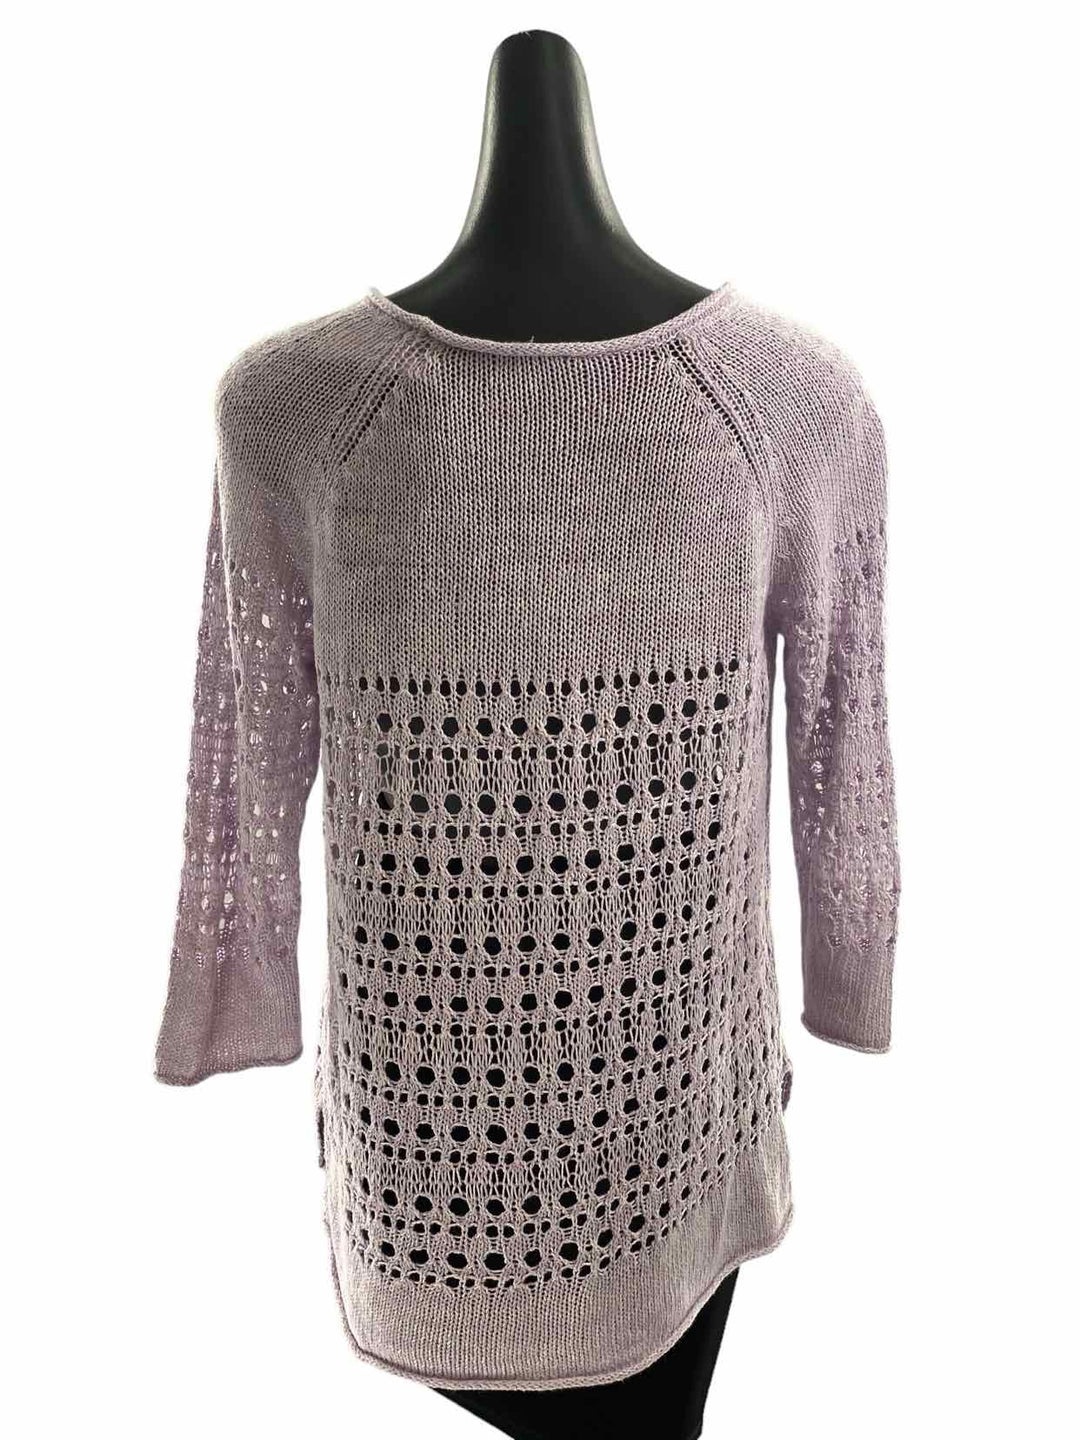 J Jill Size M Pink Sweater